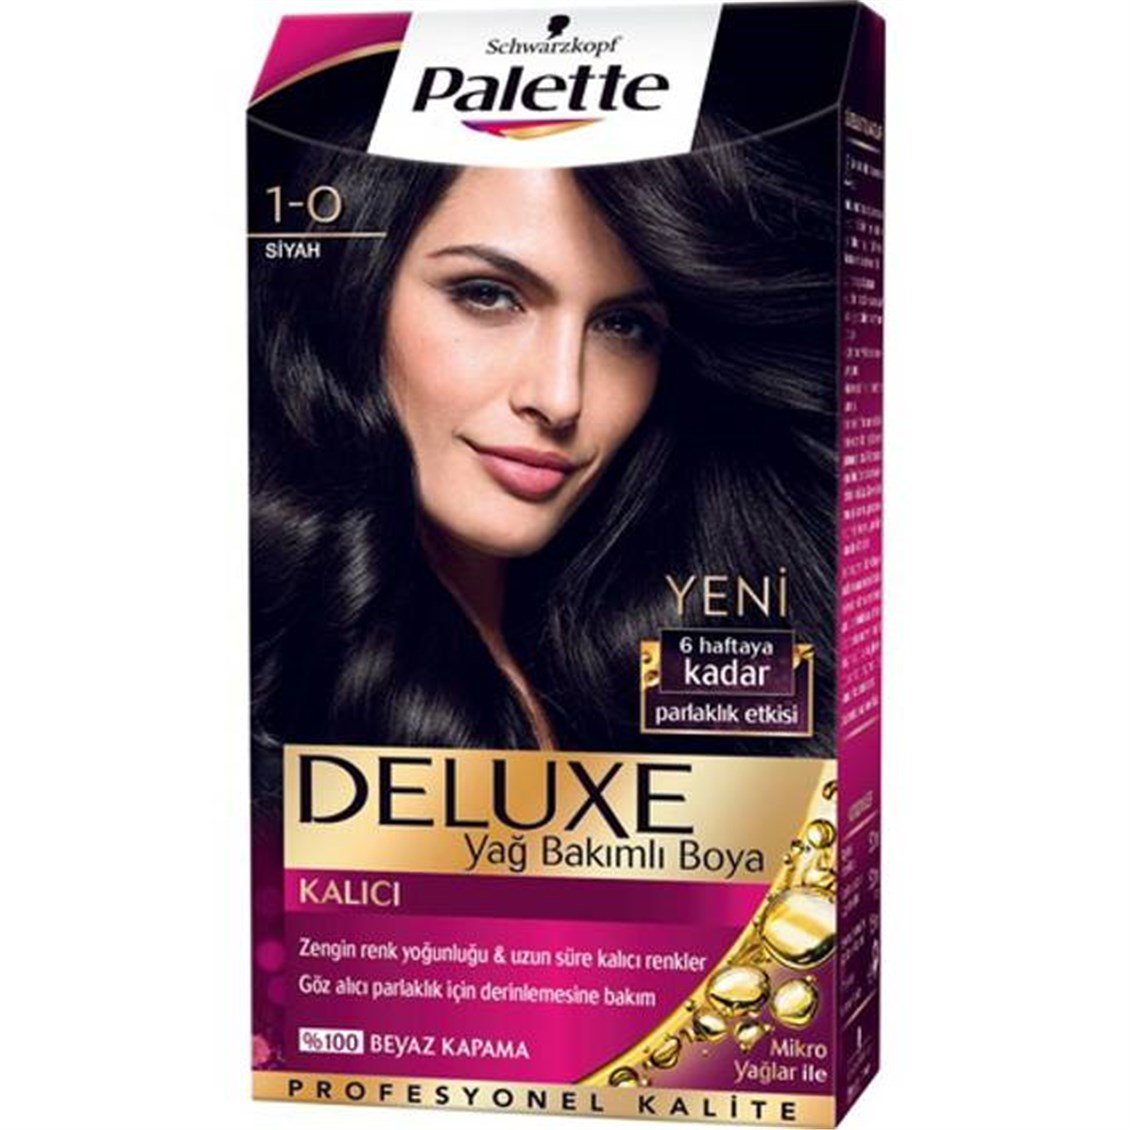 Palette Deluxe 1-0 Siyah Saç Boyası 50 ml - Onur Market